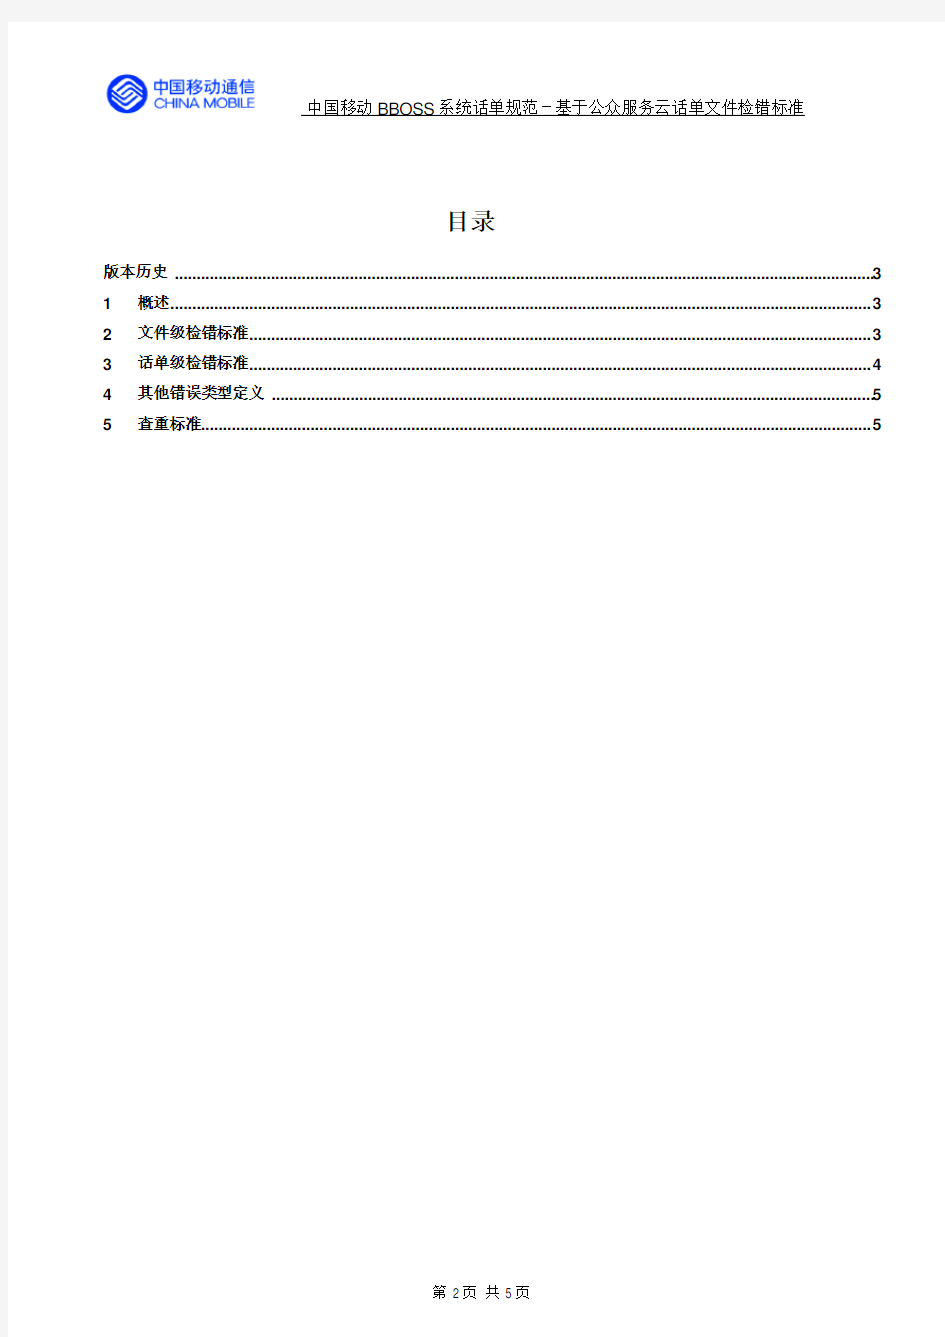 中国移动BBOSS系统话单规范--手机阅读平台业务话单文件检错标准v1.2.3